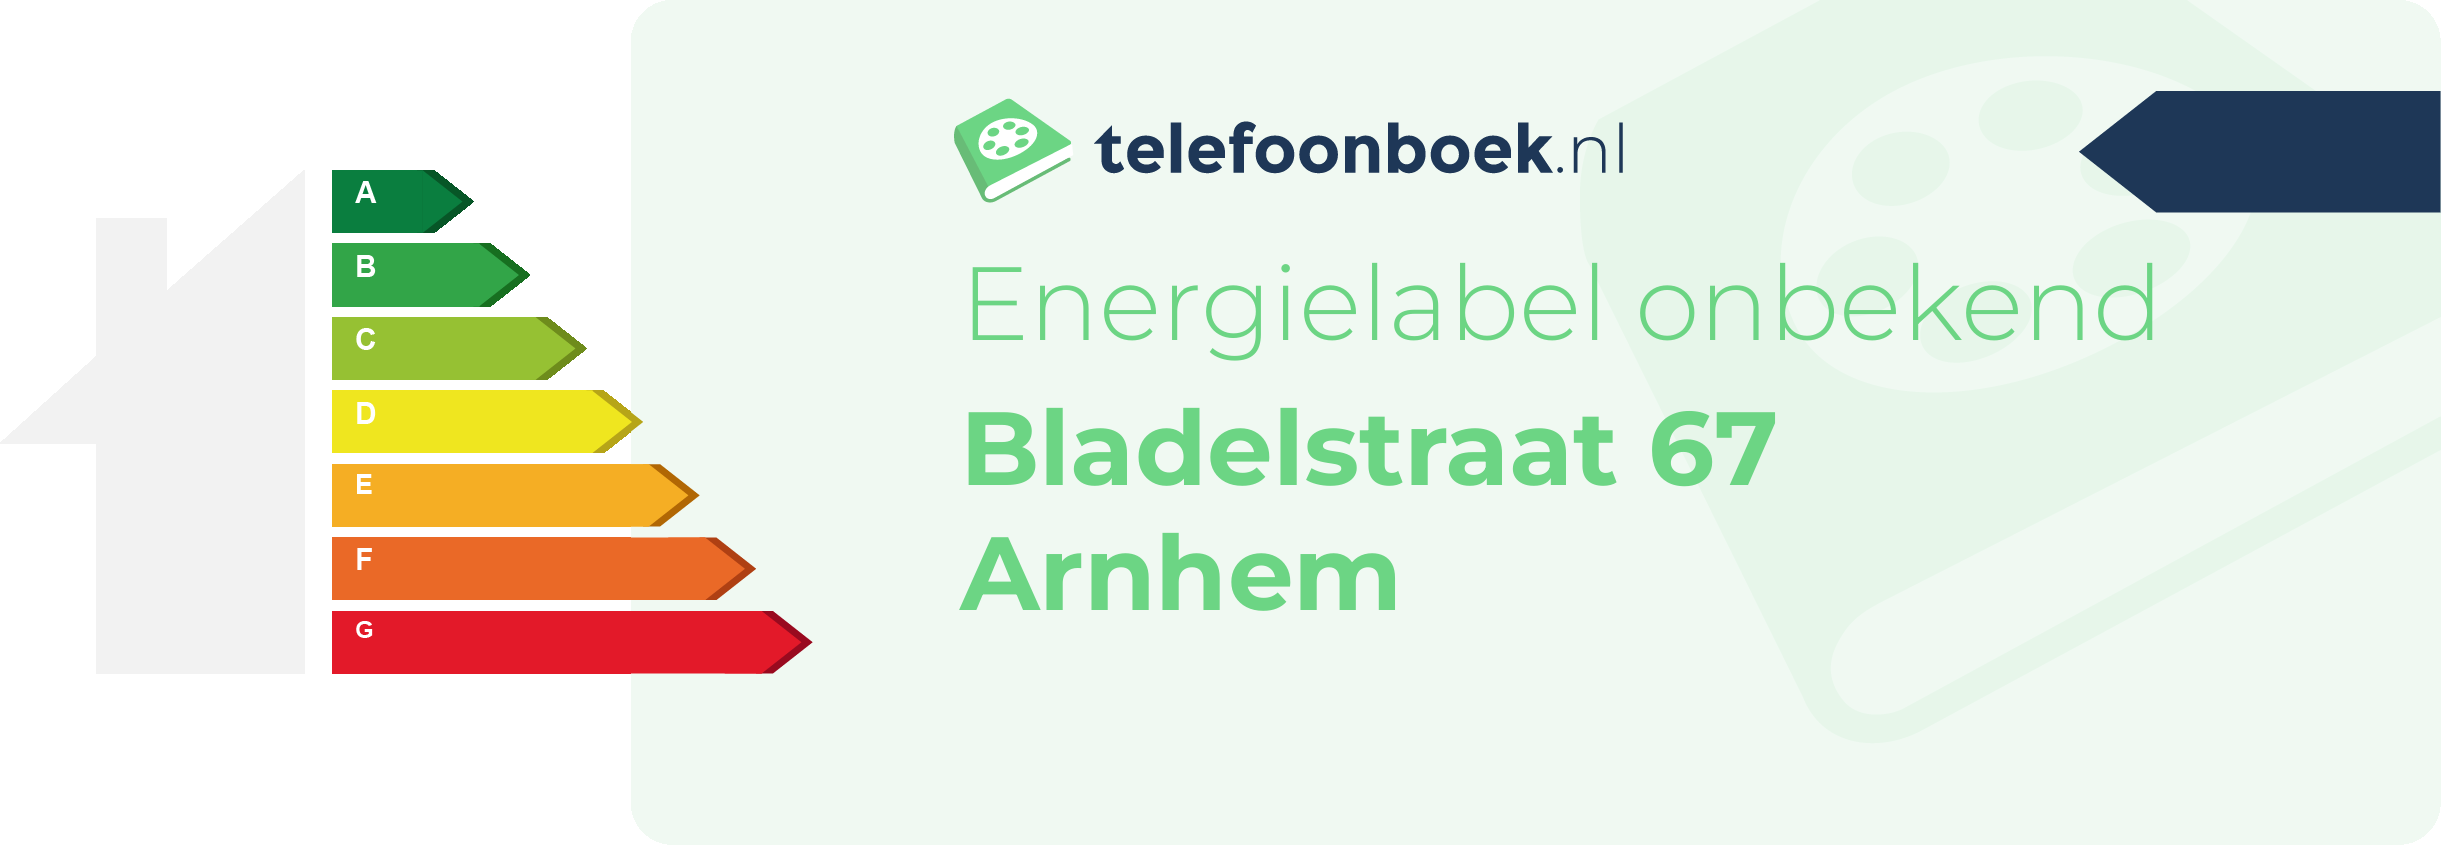 Energielabel Bladelstraat 67 Arnhem